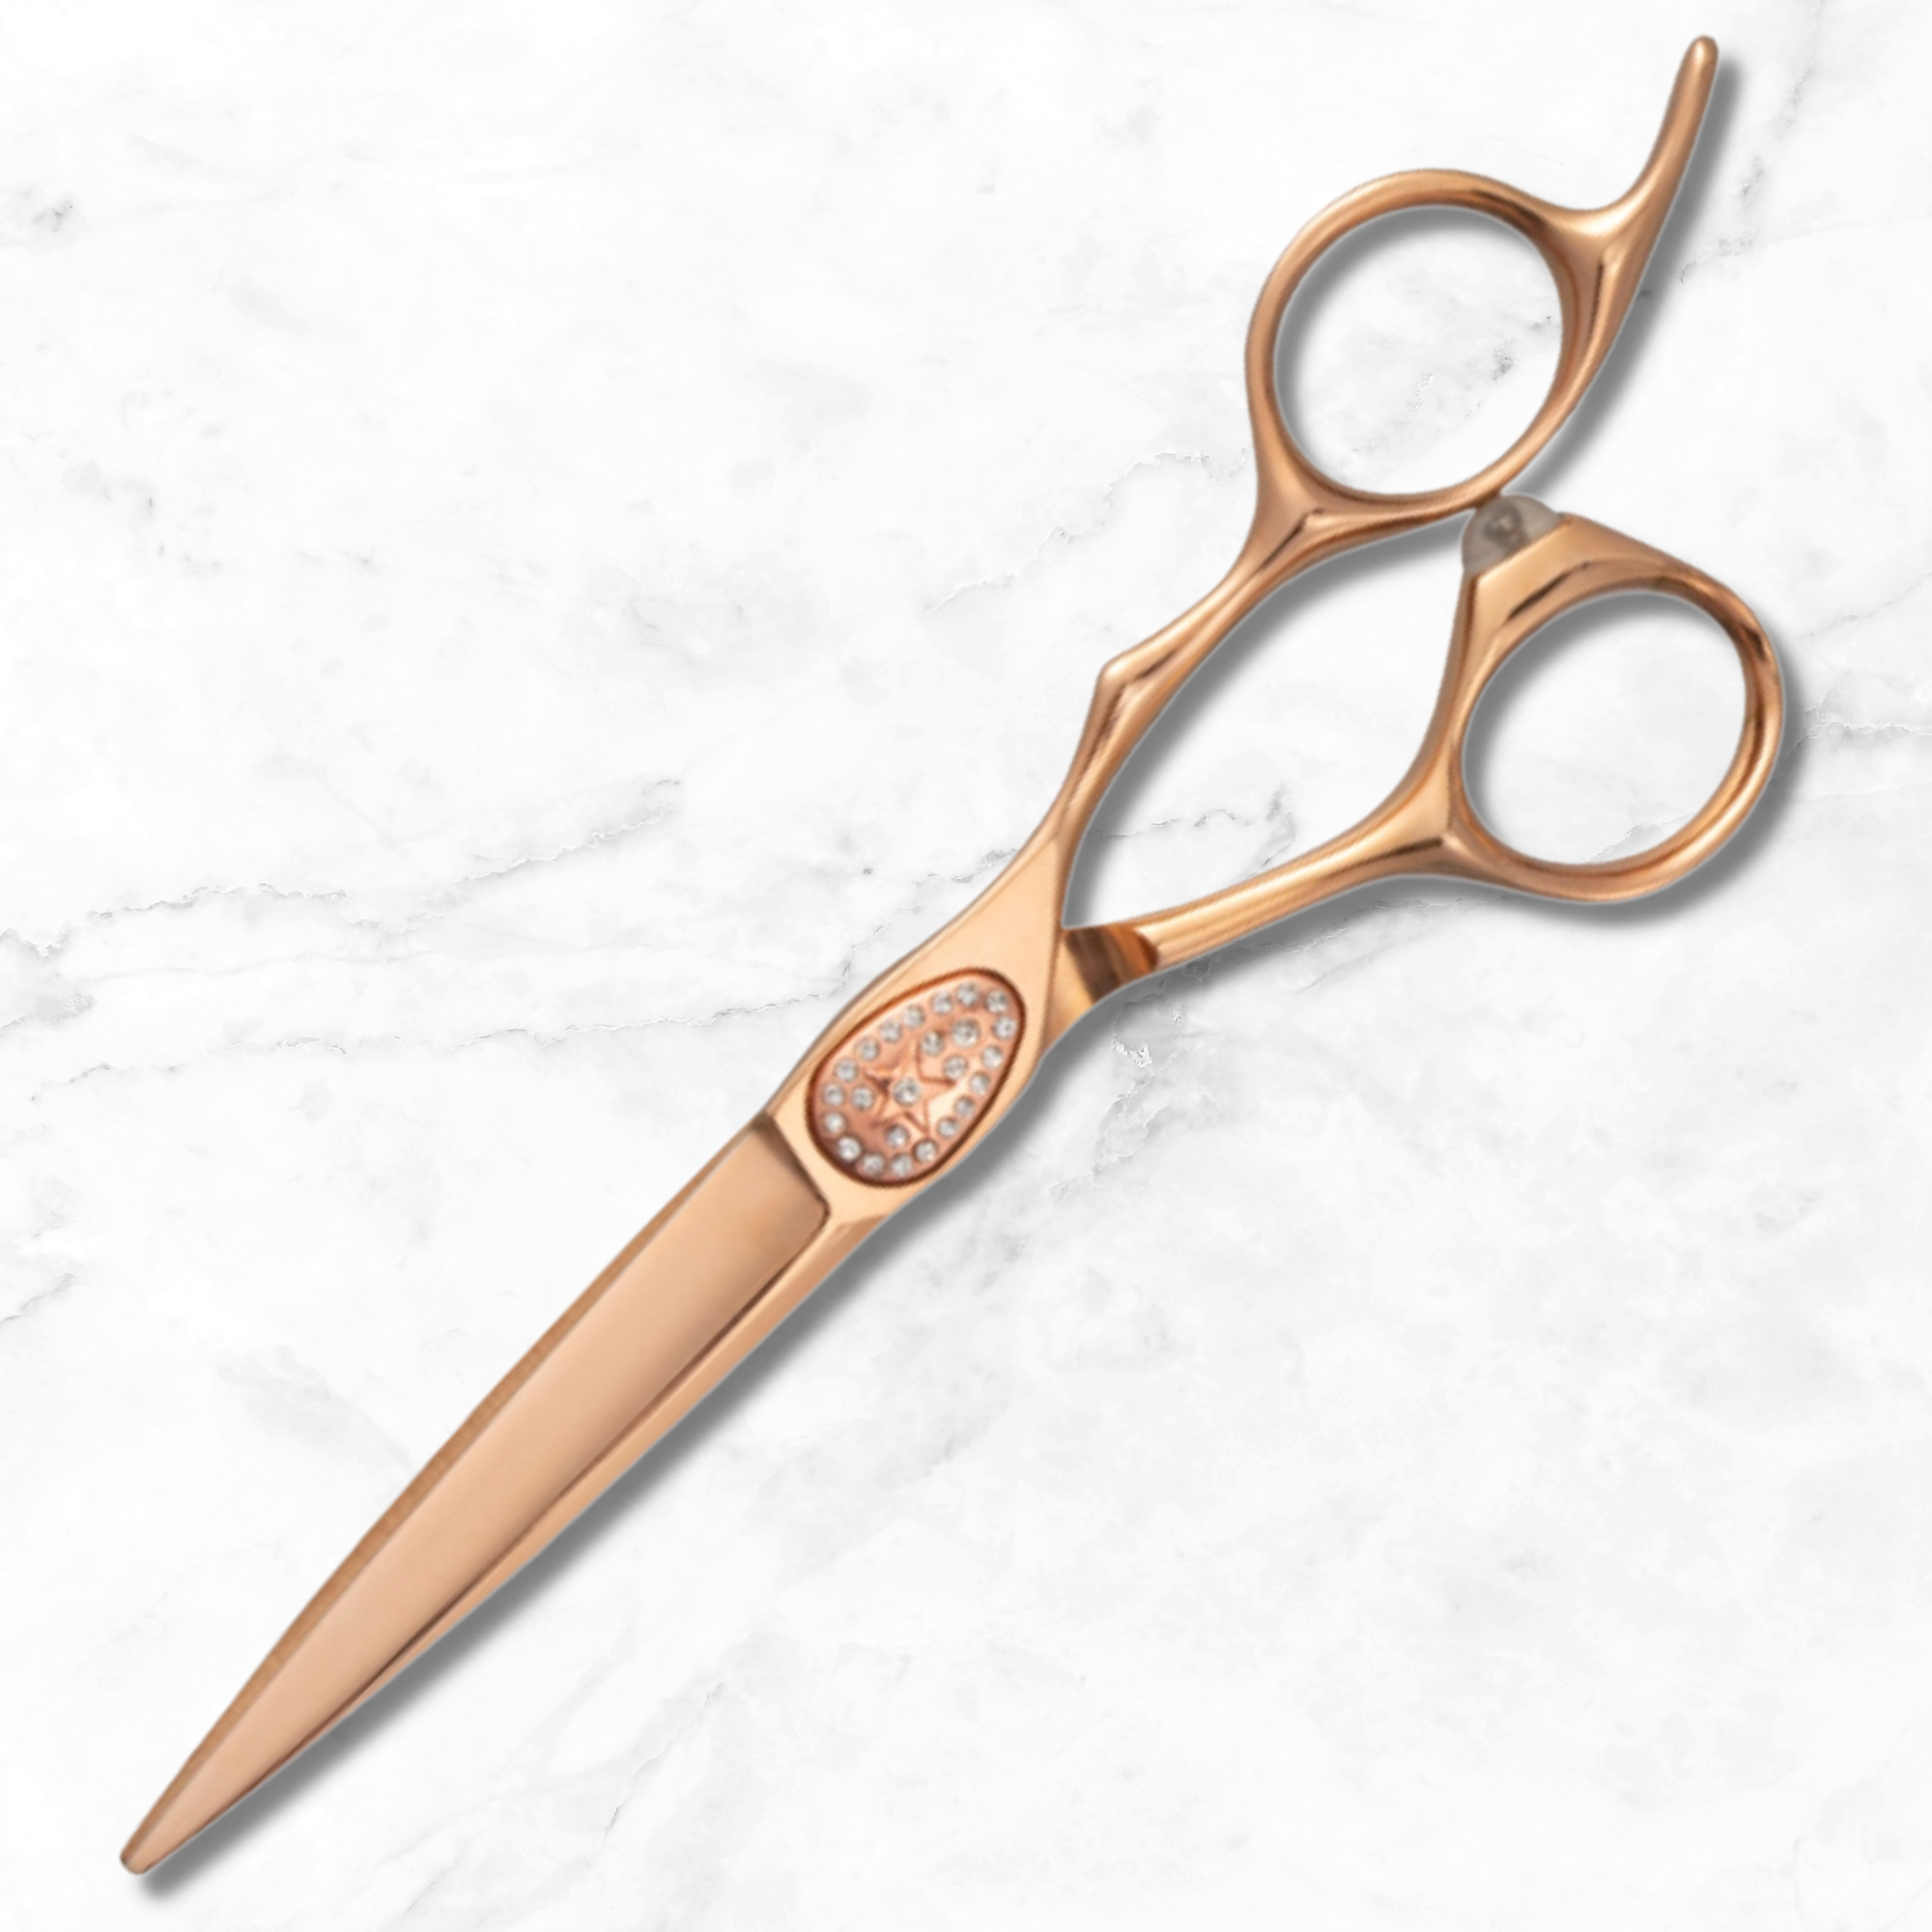 Cesoie/forbici per tagliare i capelli in oro rosa Ikigai